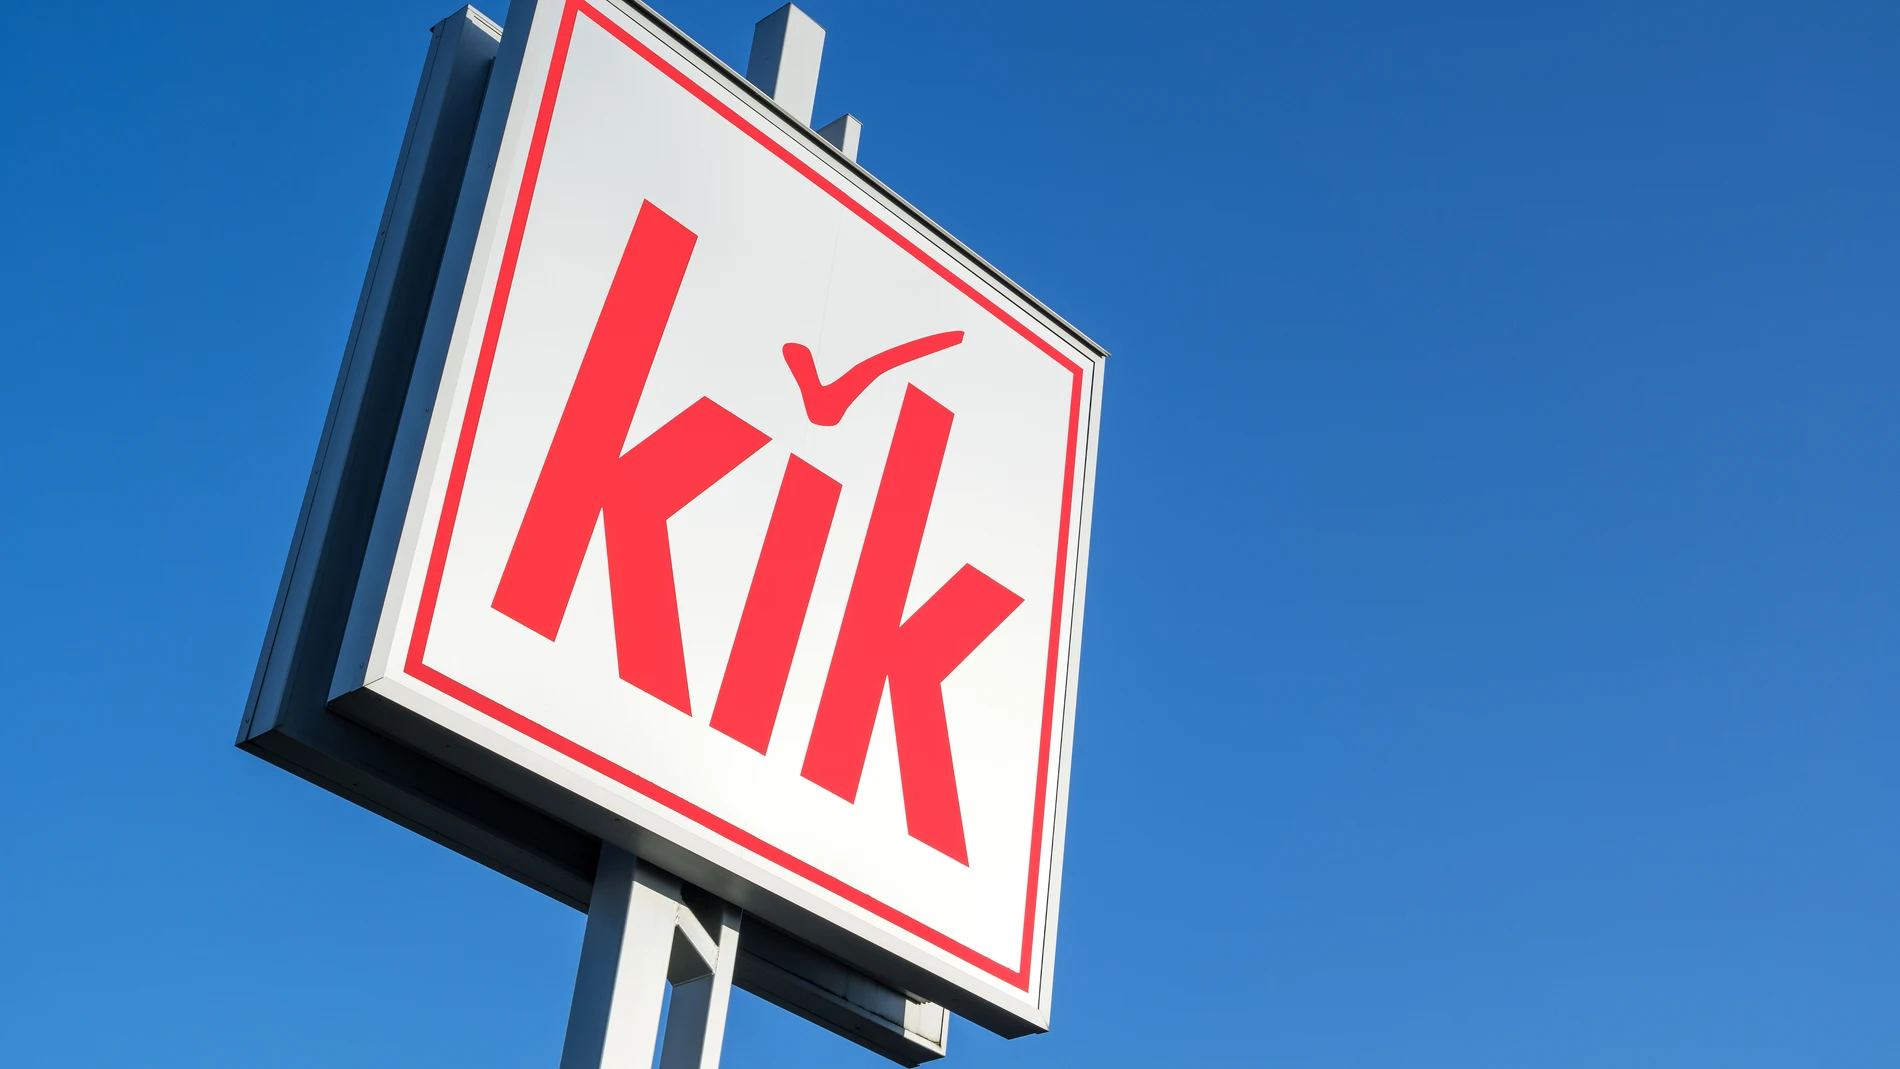 Logotipo de la tienda Kik